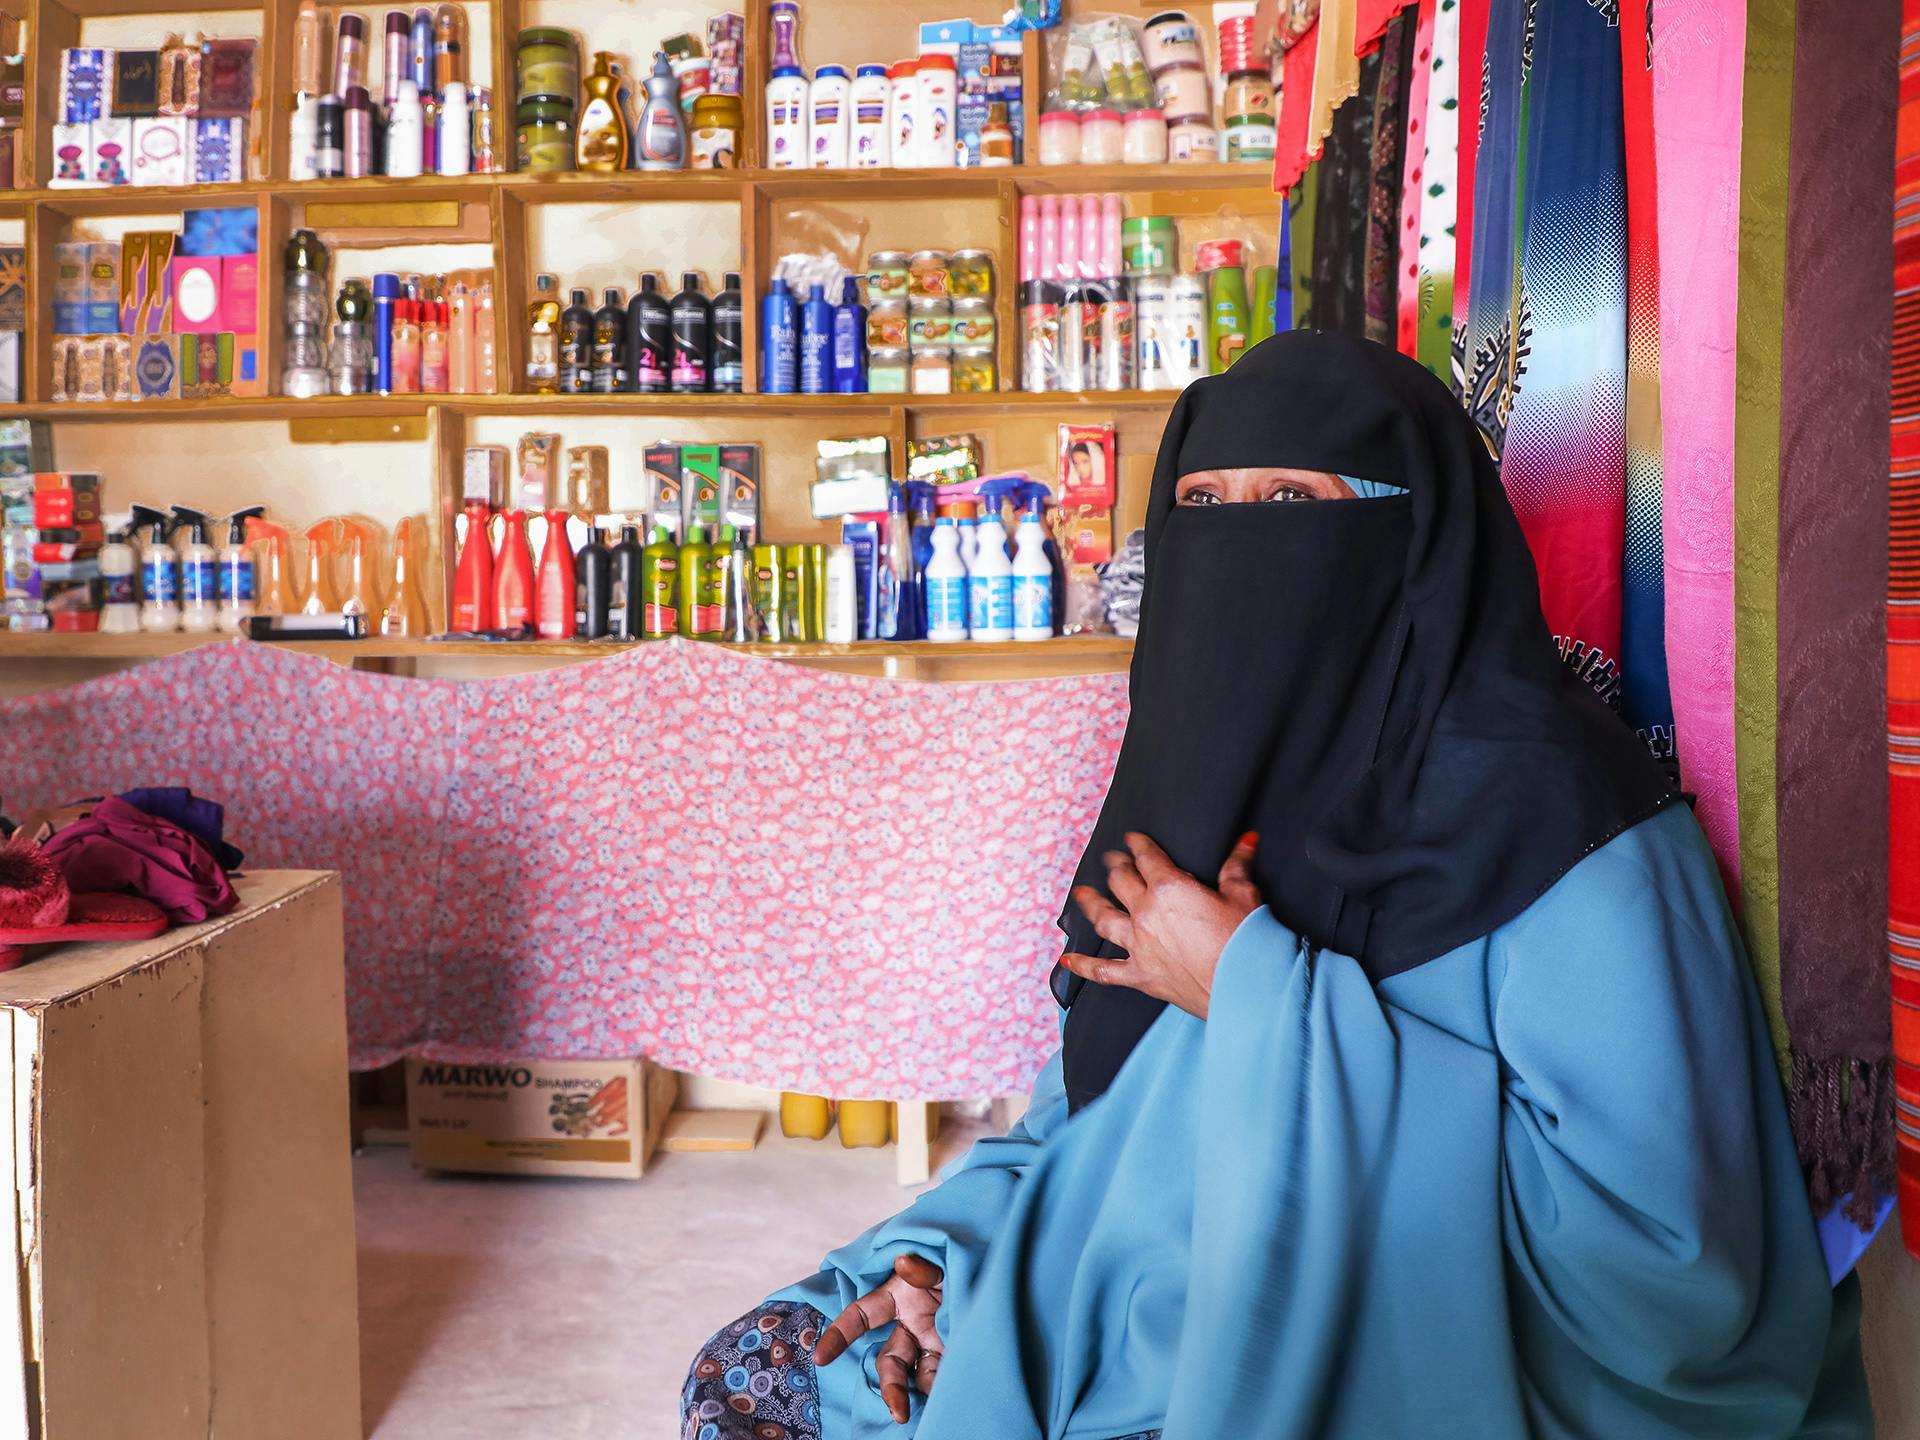 En kvinna i svart niqab och blå hiijab sitter på golvet i en butik. I bakgrunden syns hyllor med livsmedelsprodukter och tyger i olika färger och mönster.